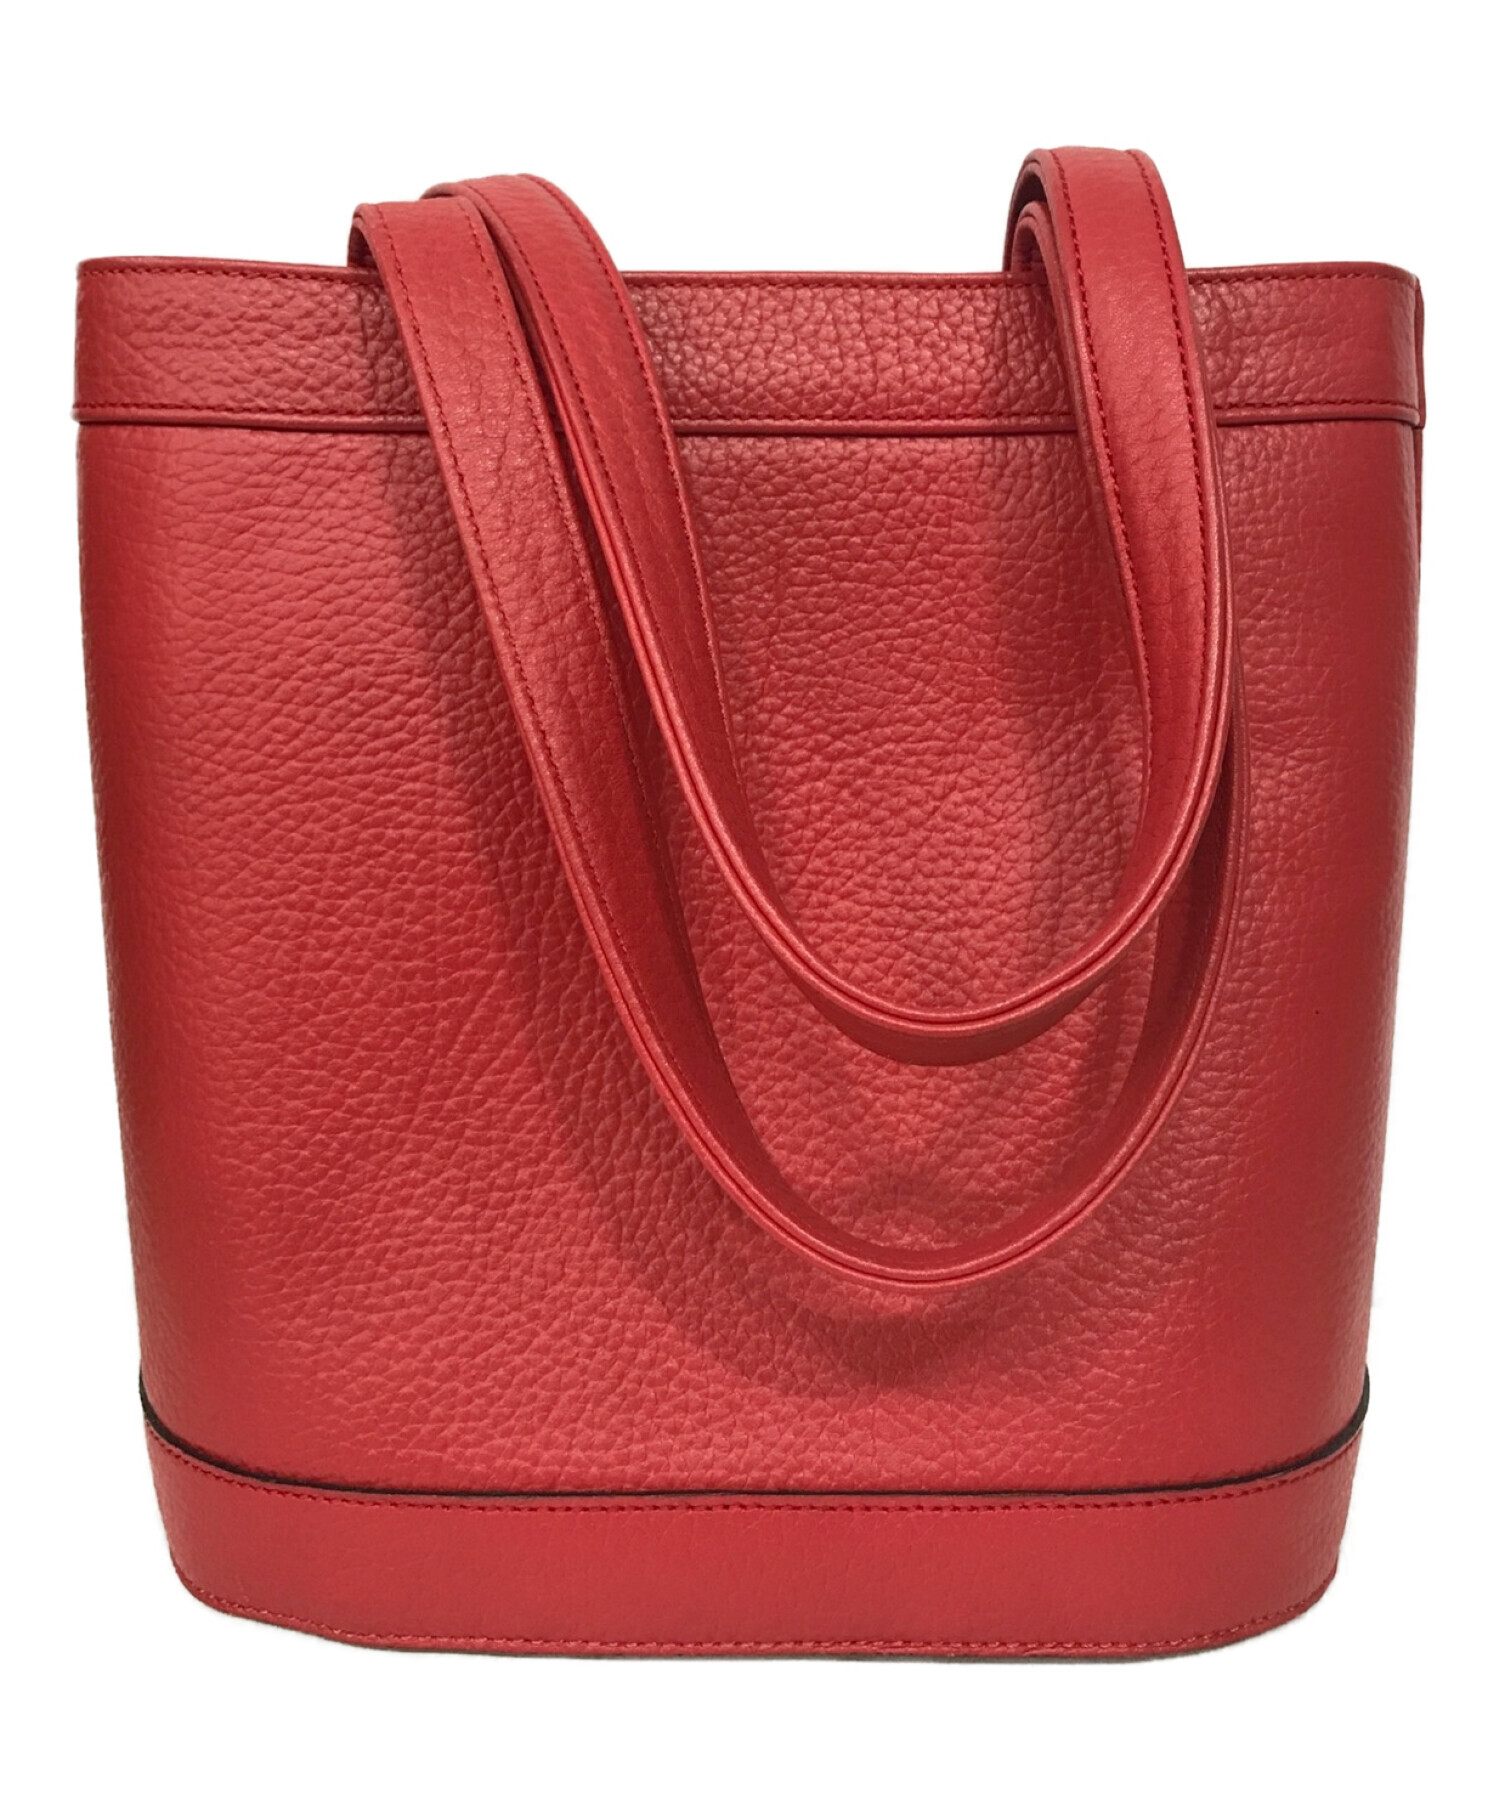 ◆超美品◆ ハイクラス HIGH CLASS ハンドバッグ 鞄 レザー 赤系